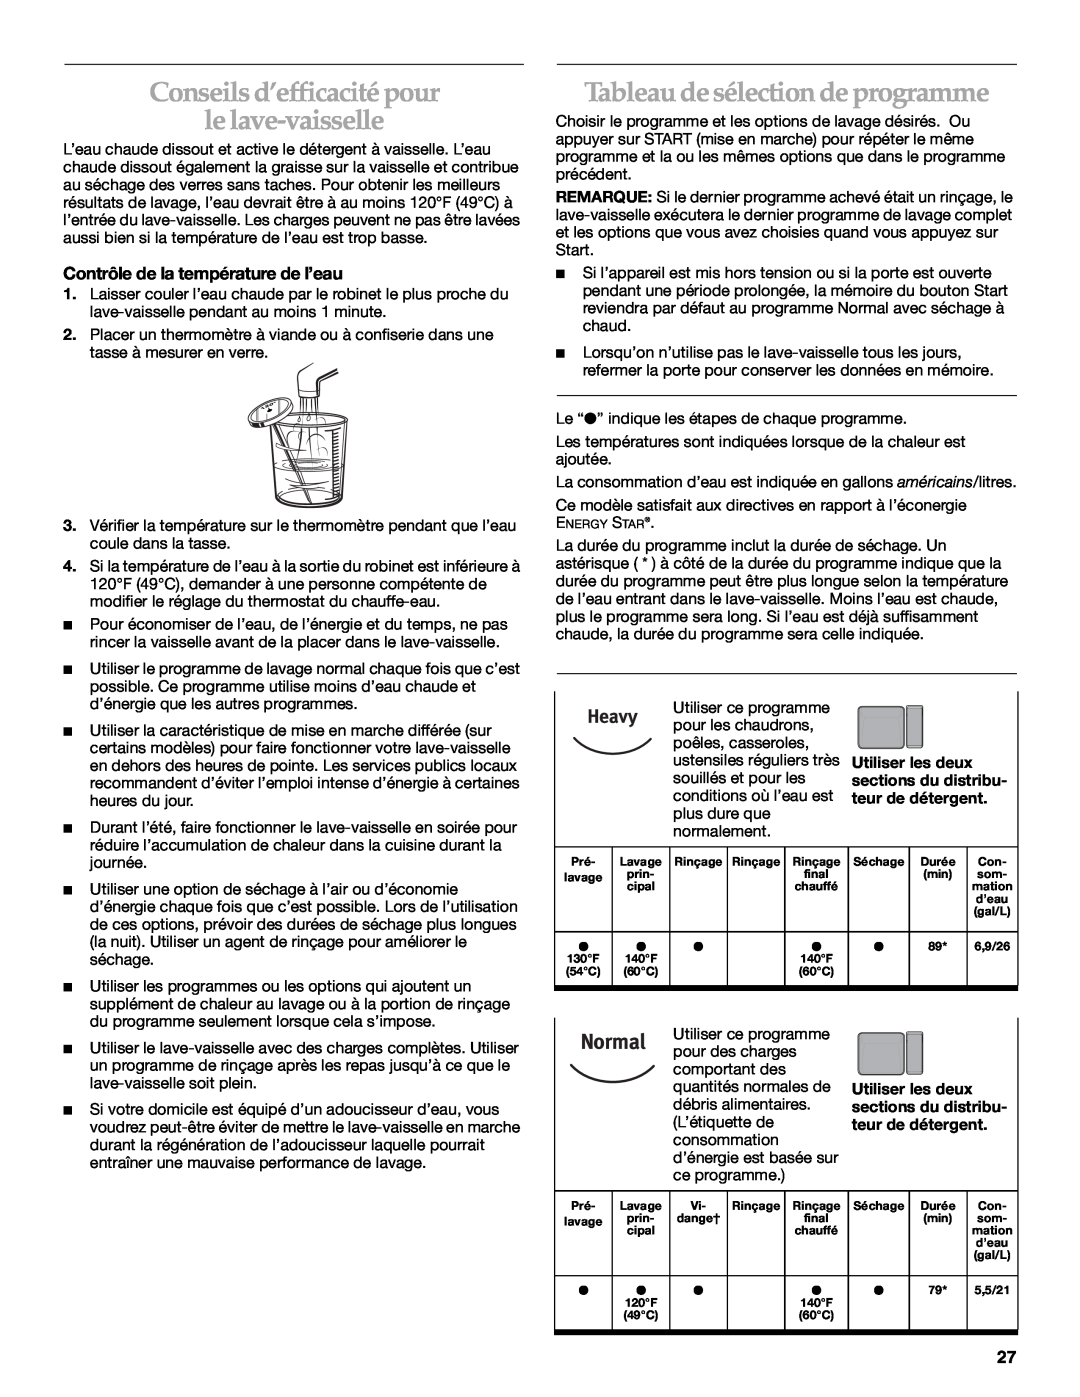 KitchenAid KUDM01TJ manual Conseils d’efficacité pour le lave-vaisselle, Tableau de sélection de programme 